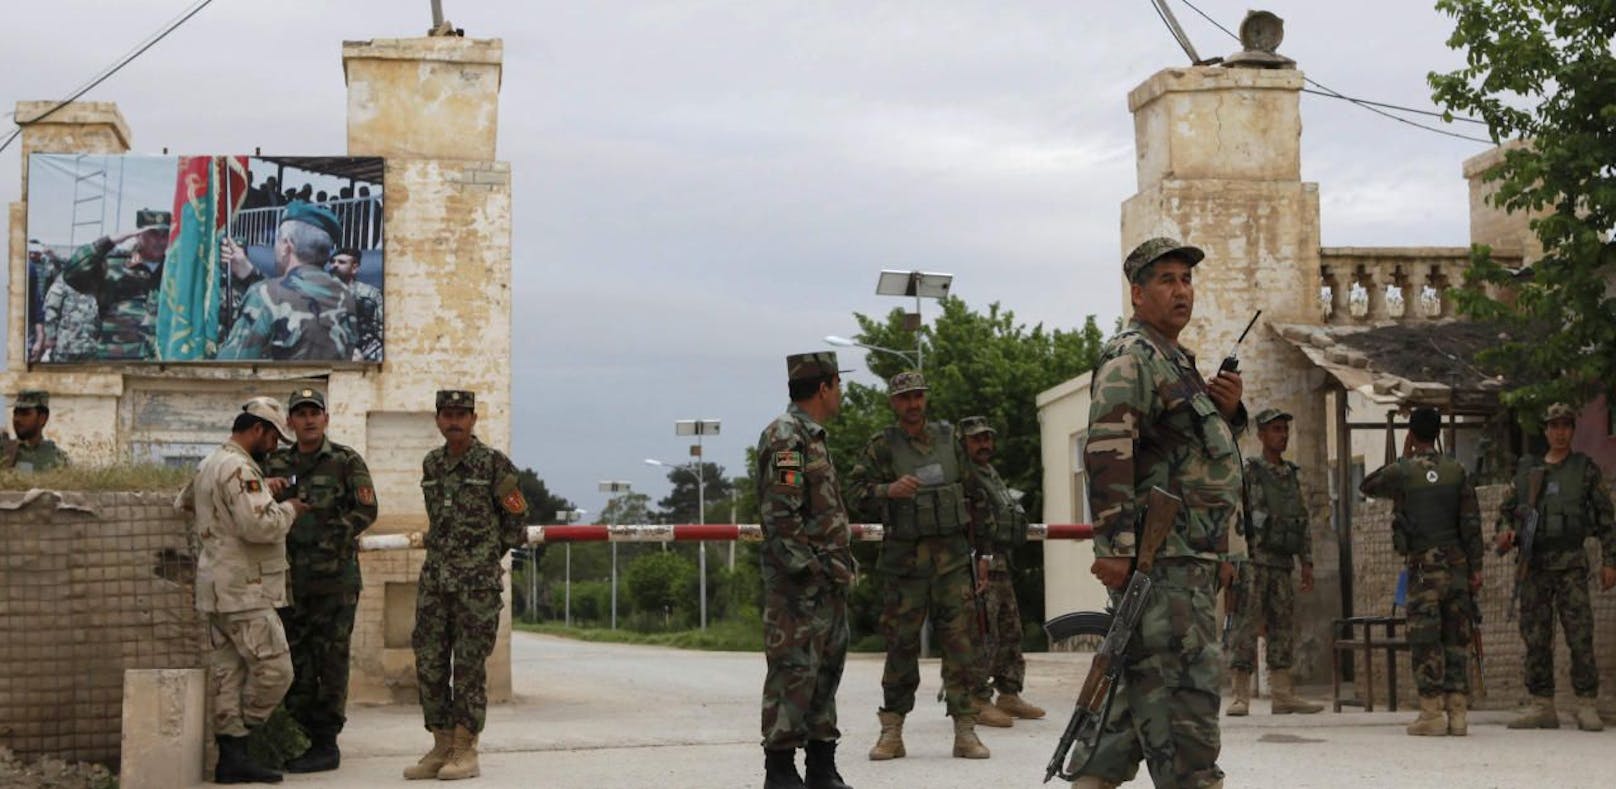 Afghanische Soldaten bewachen die Militärbasis in der Provinz Balch, die von der Taliban angegriffen wurde.